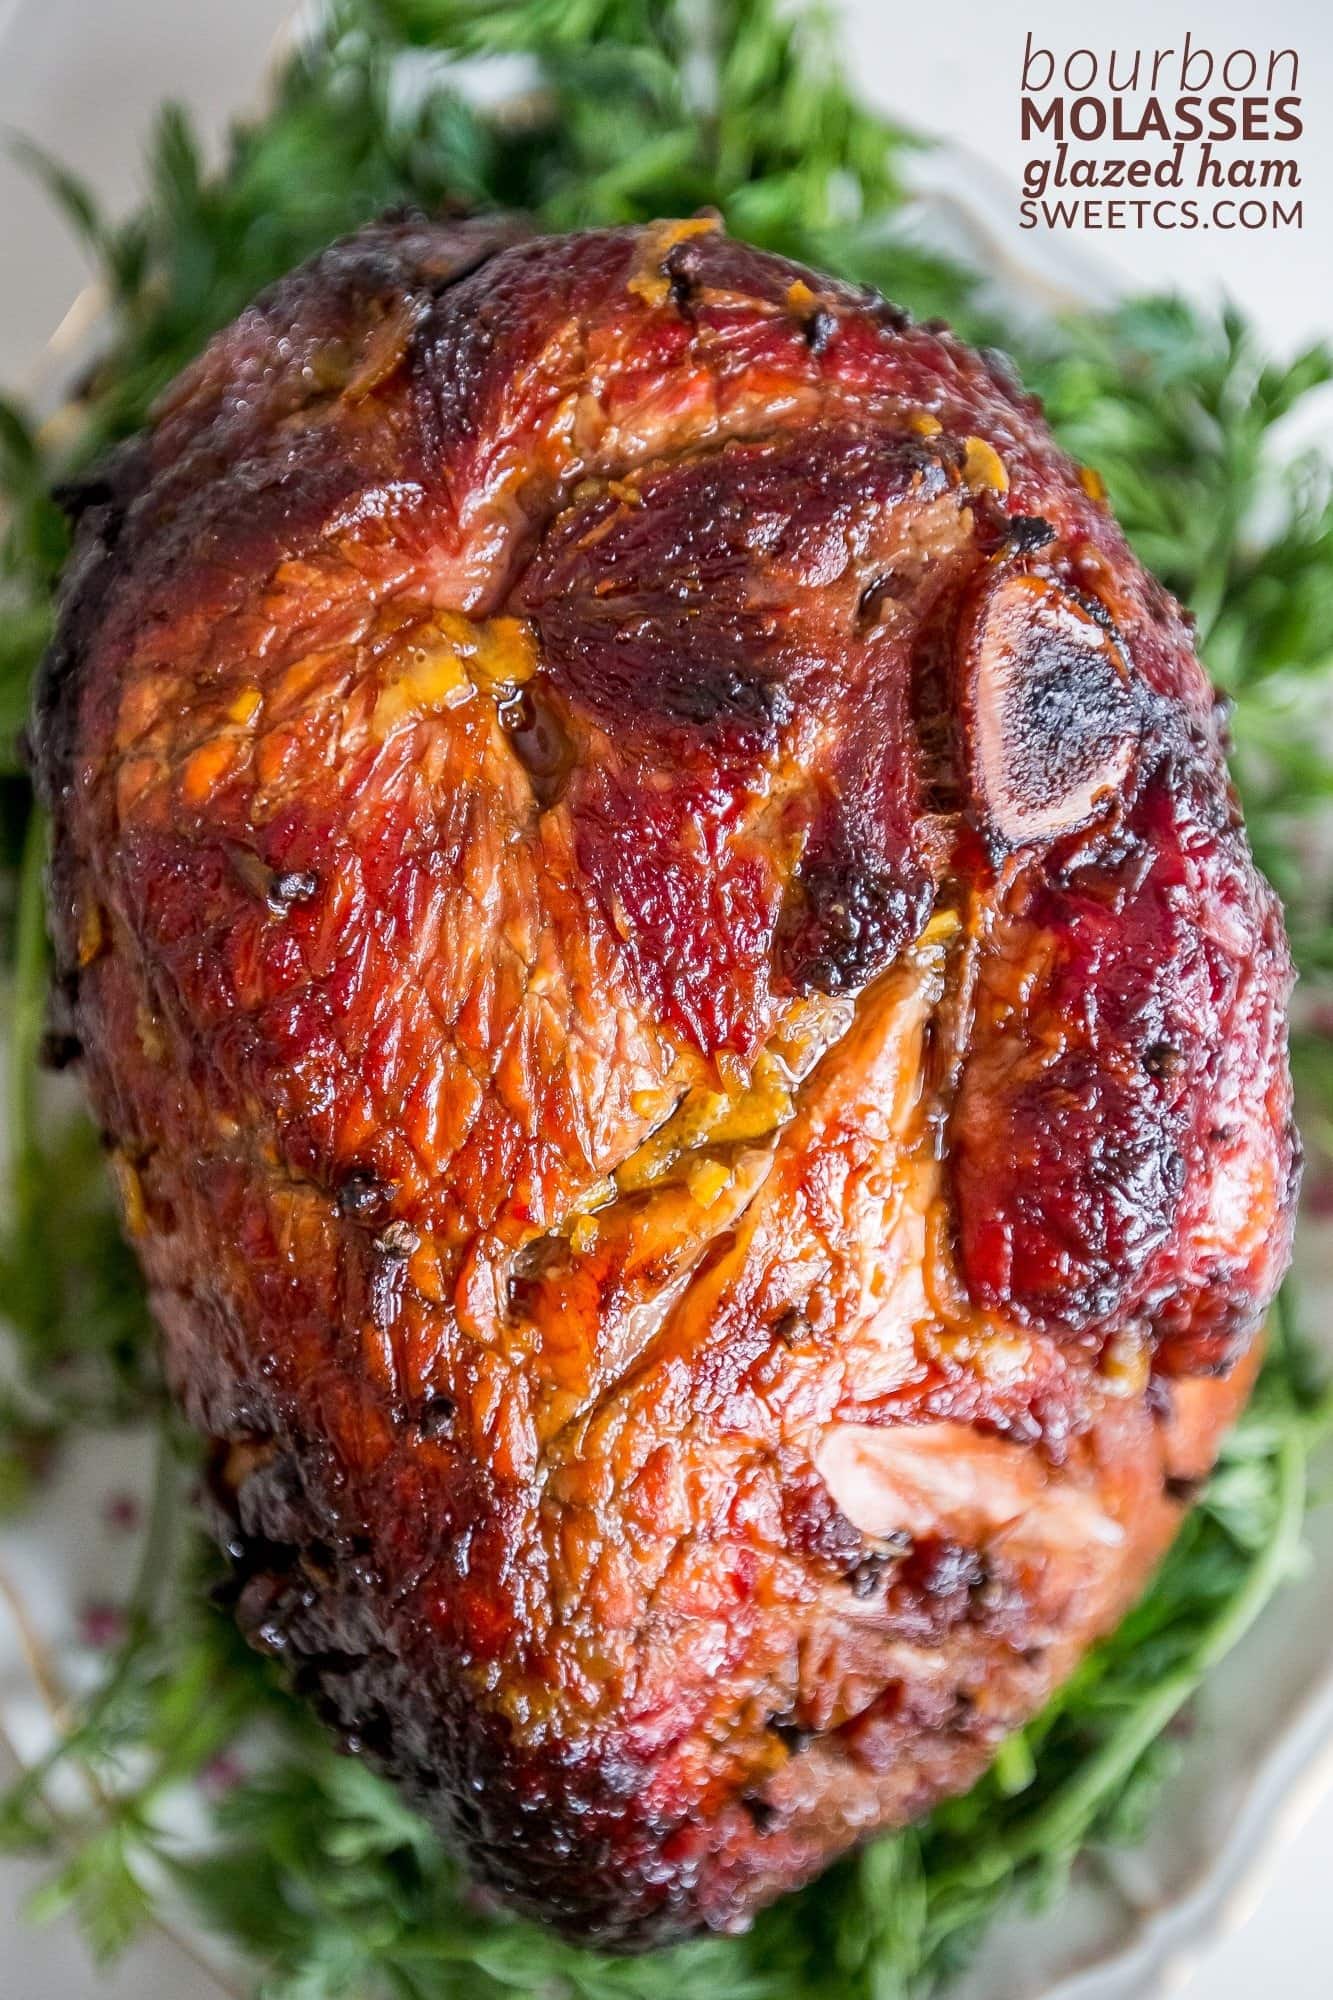 Closeup of whole glazed ham on a plate. 